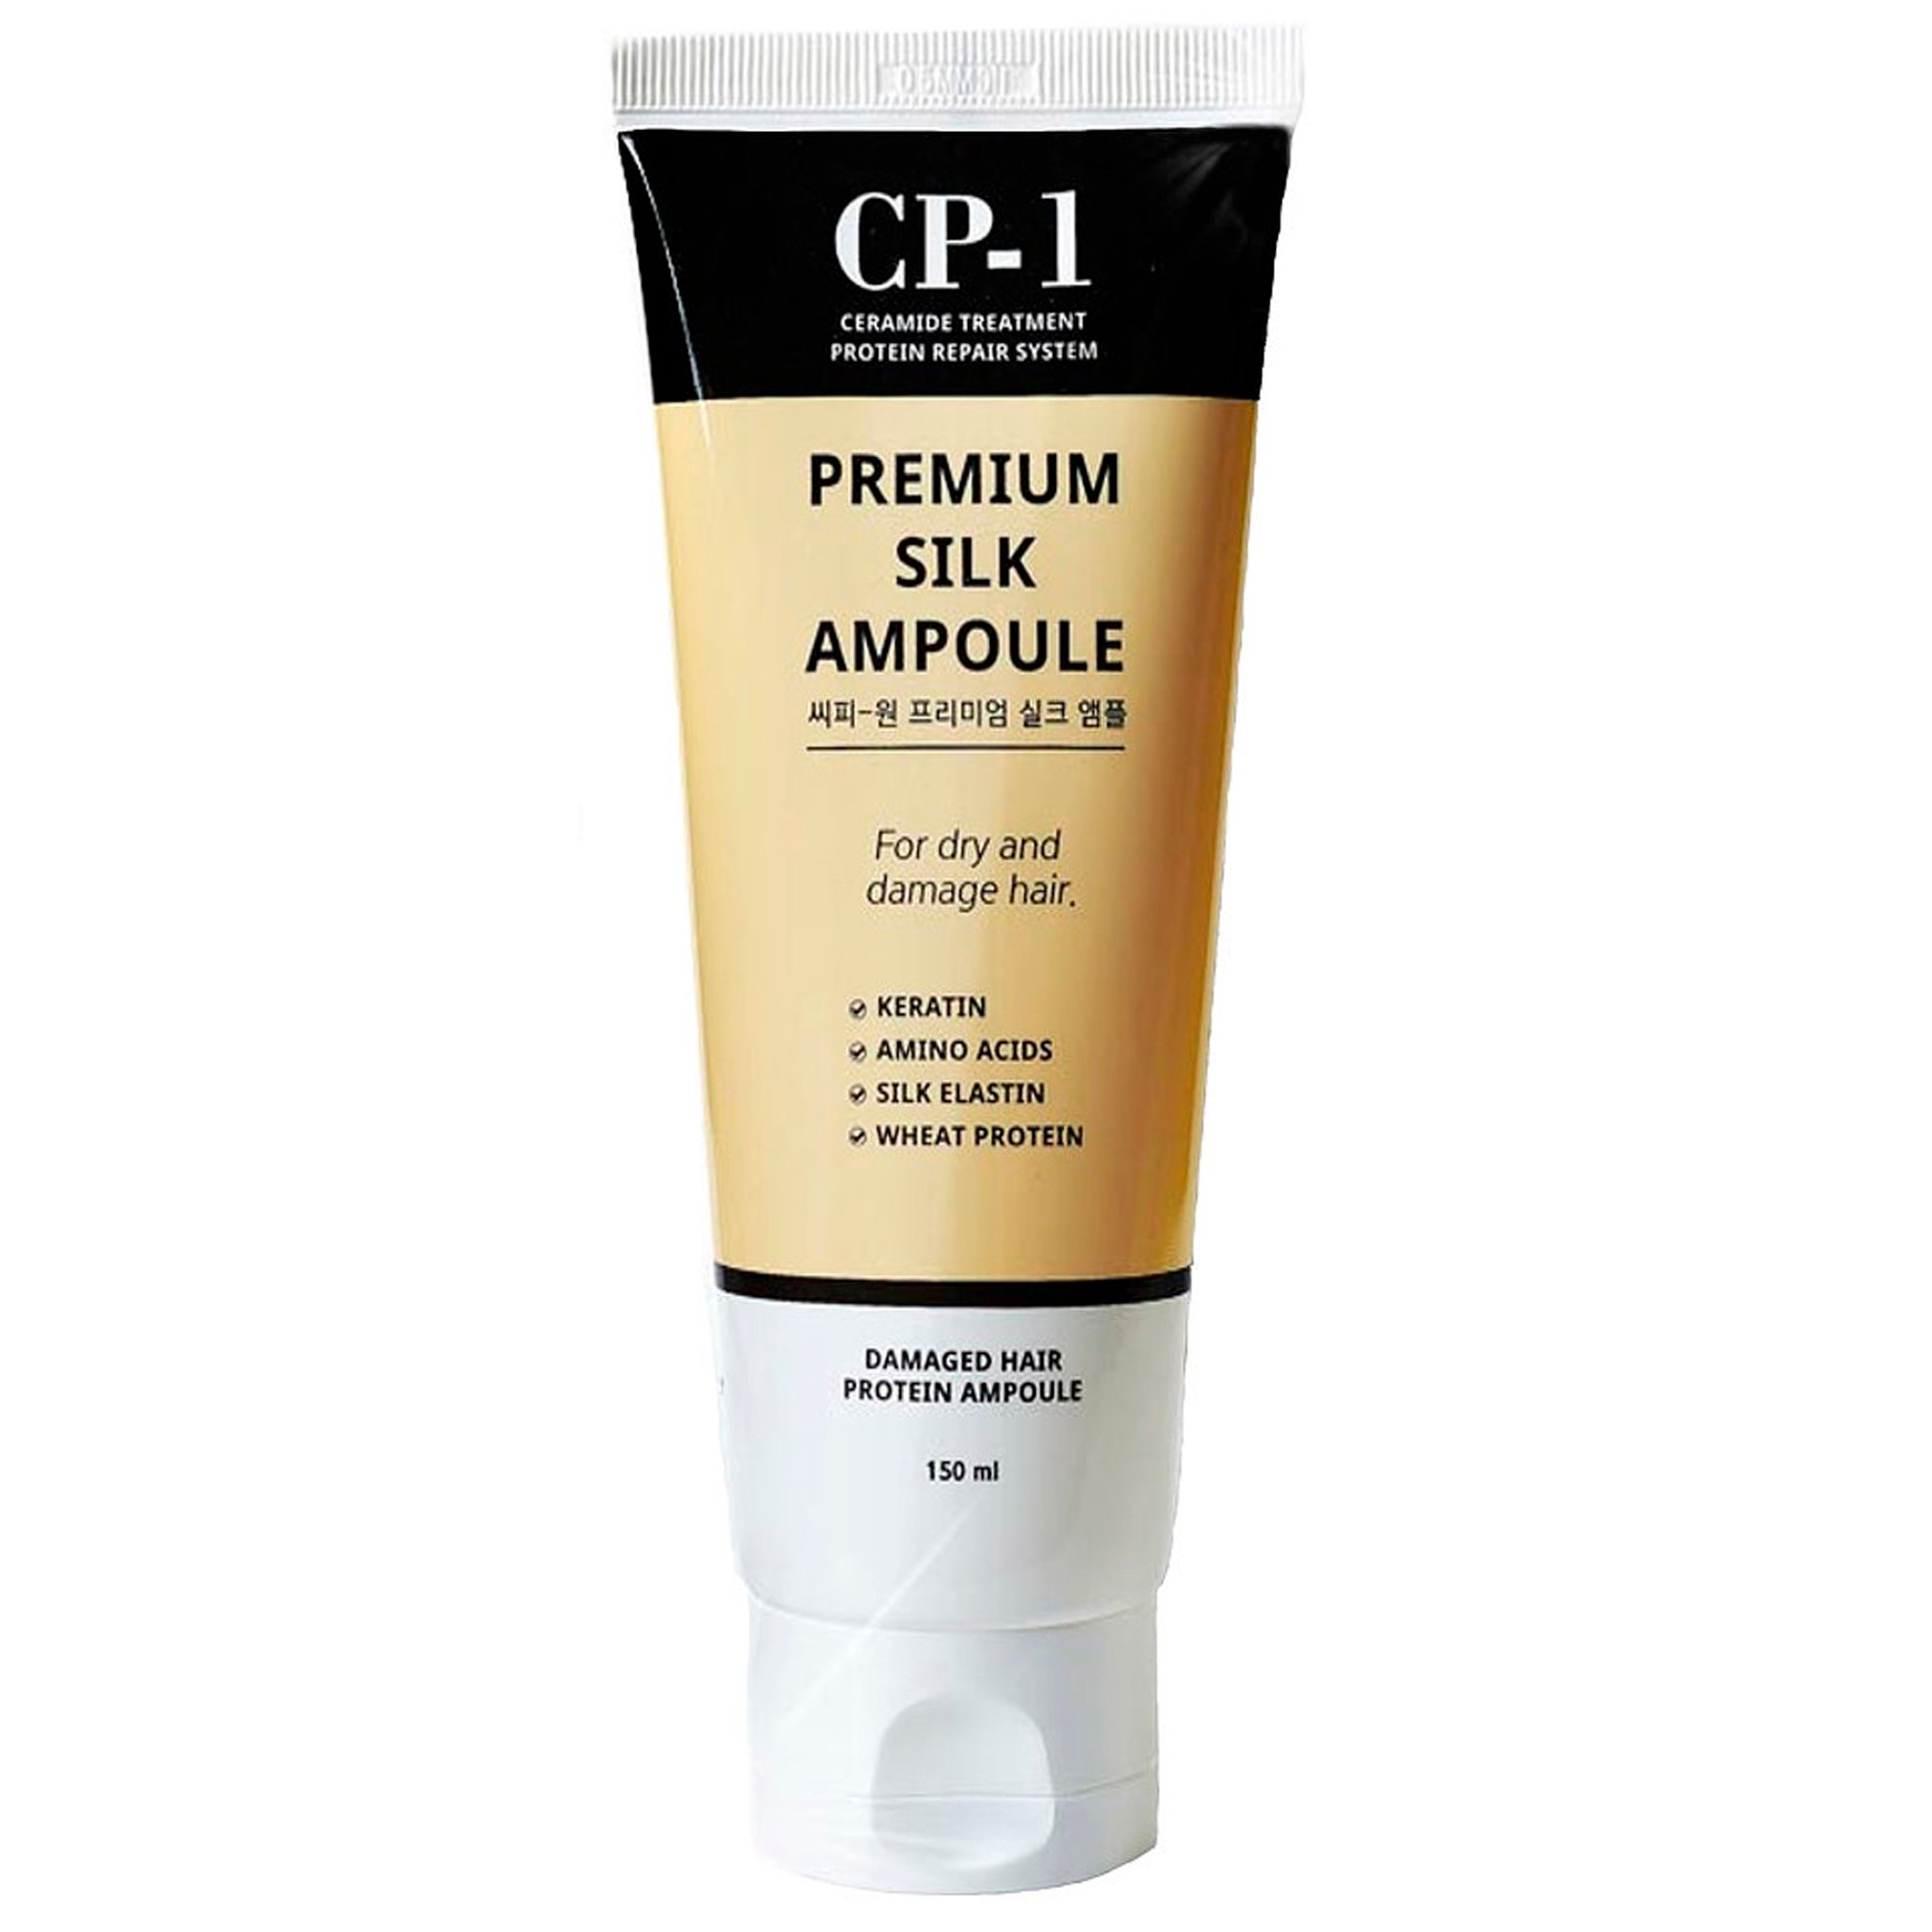 Сыворотка для волос Esthetic House CP-1 Premium Silk Ampoule с протеинами шелка, 150 мл - фото 1